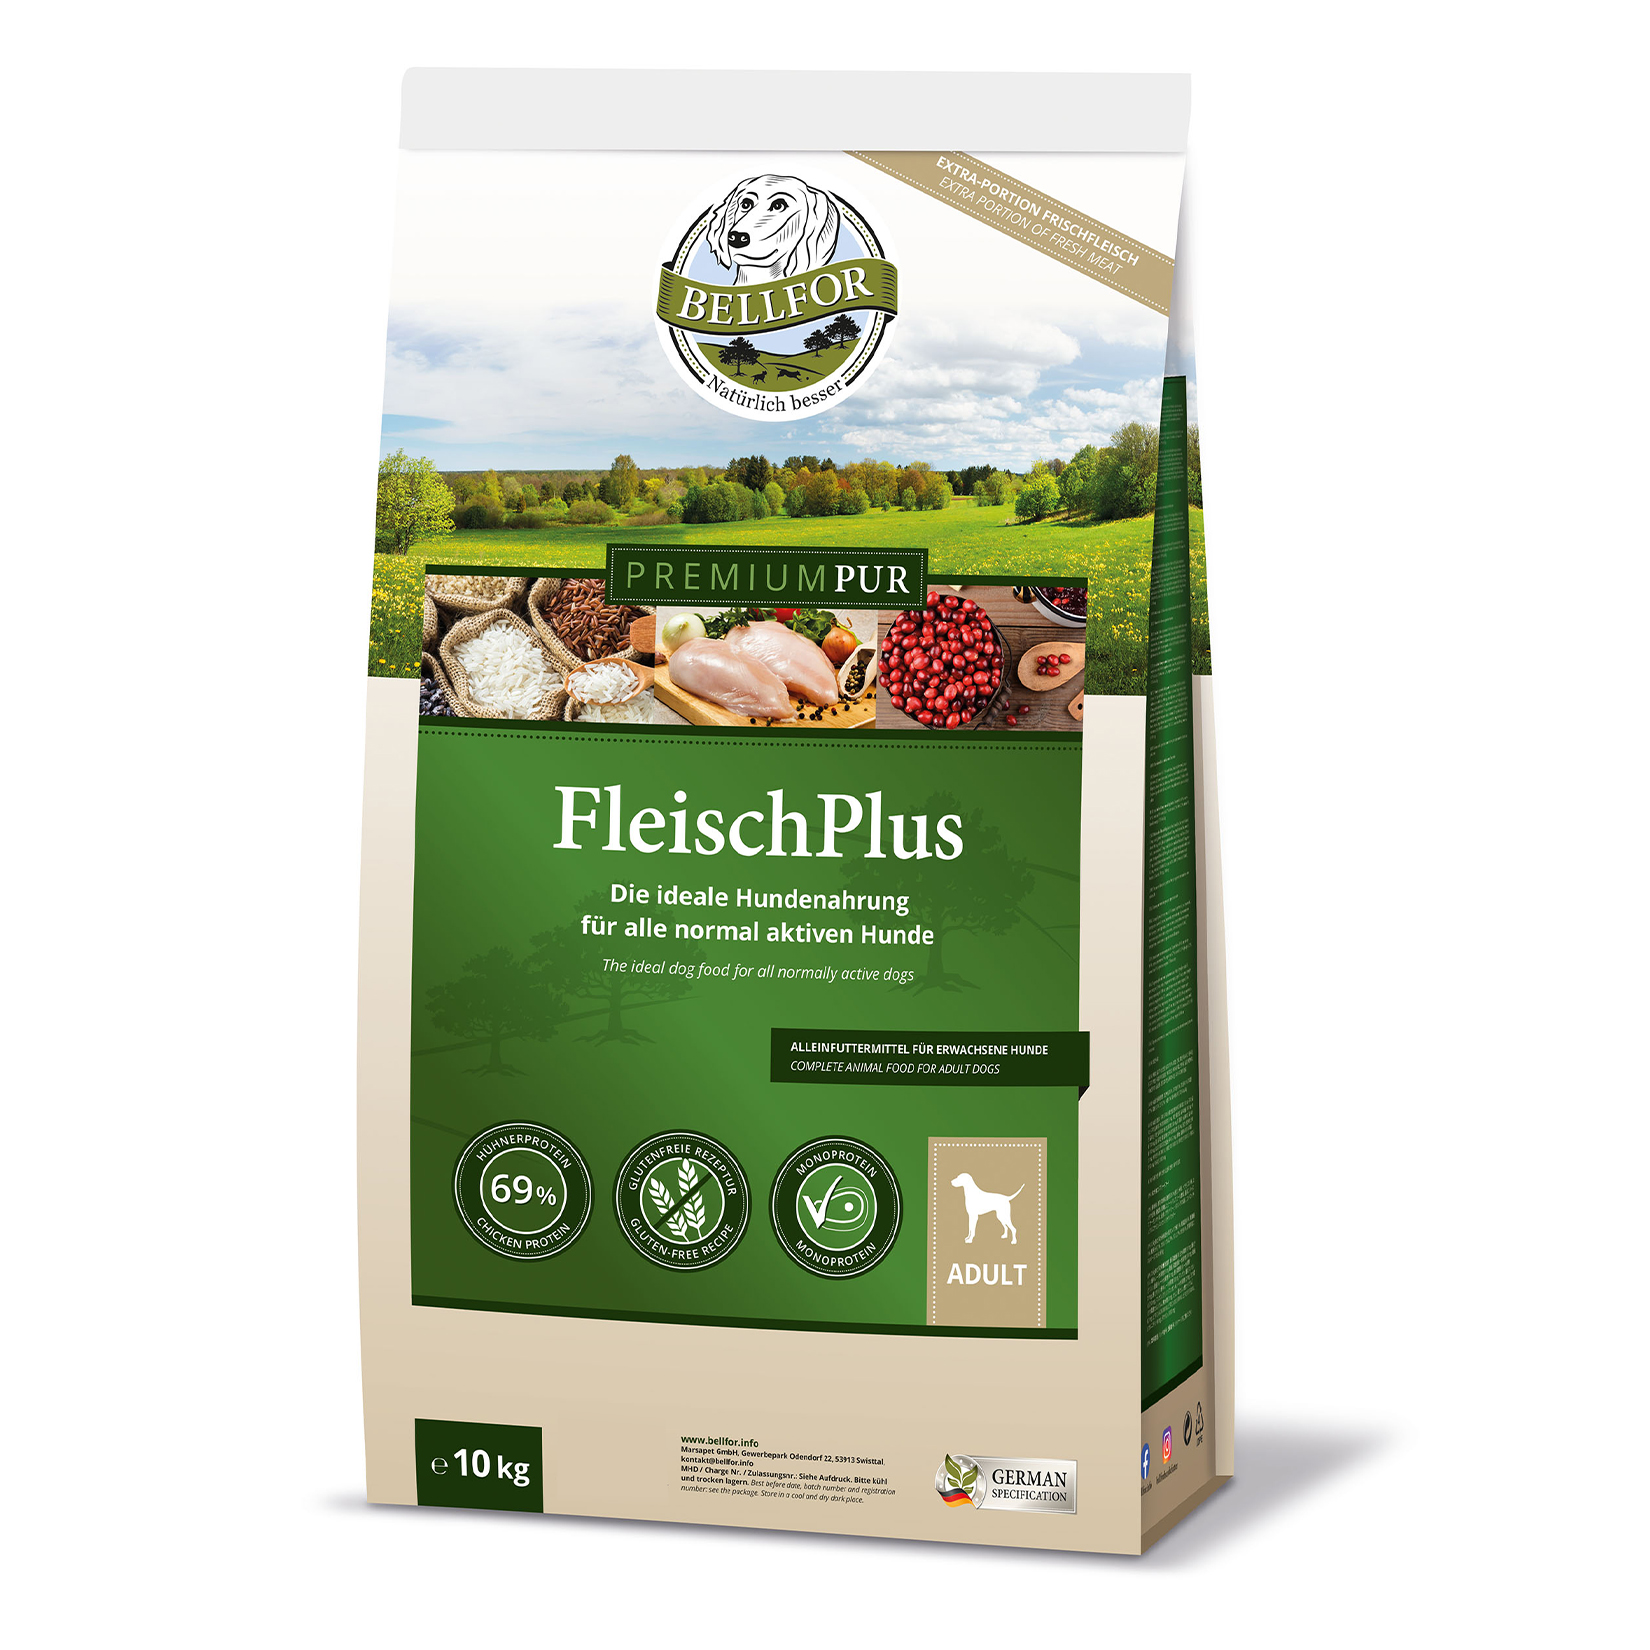 Nourriture pour chien sans gluten avec de la viande de poulet - premium pur fleischplus - 10 kg